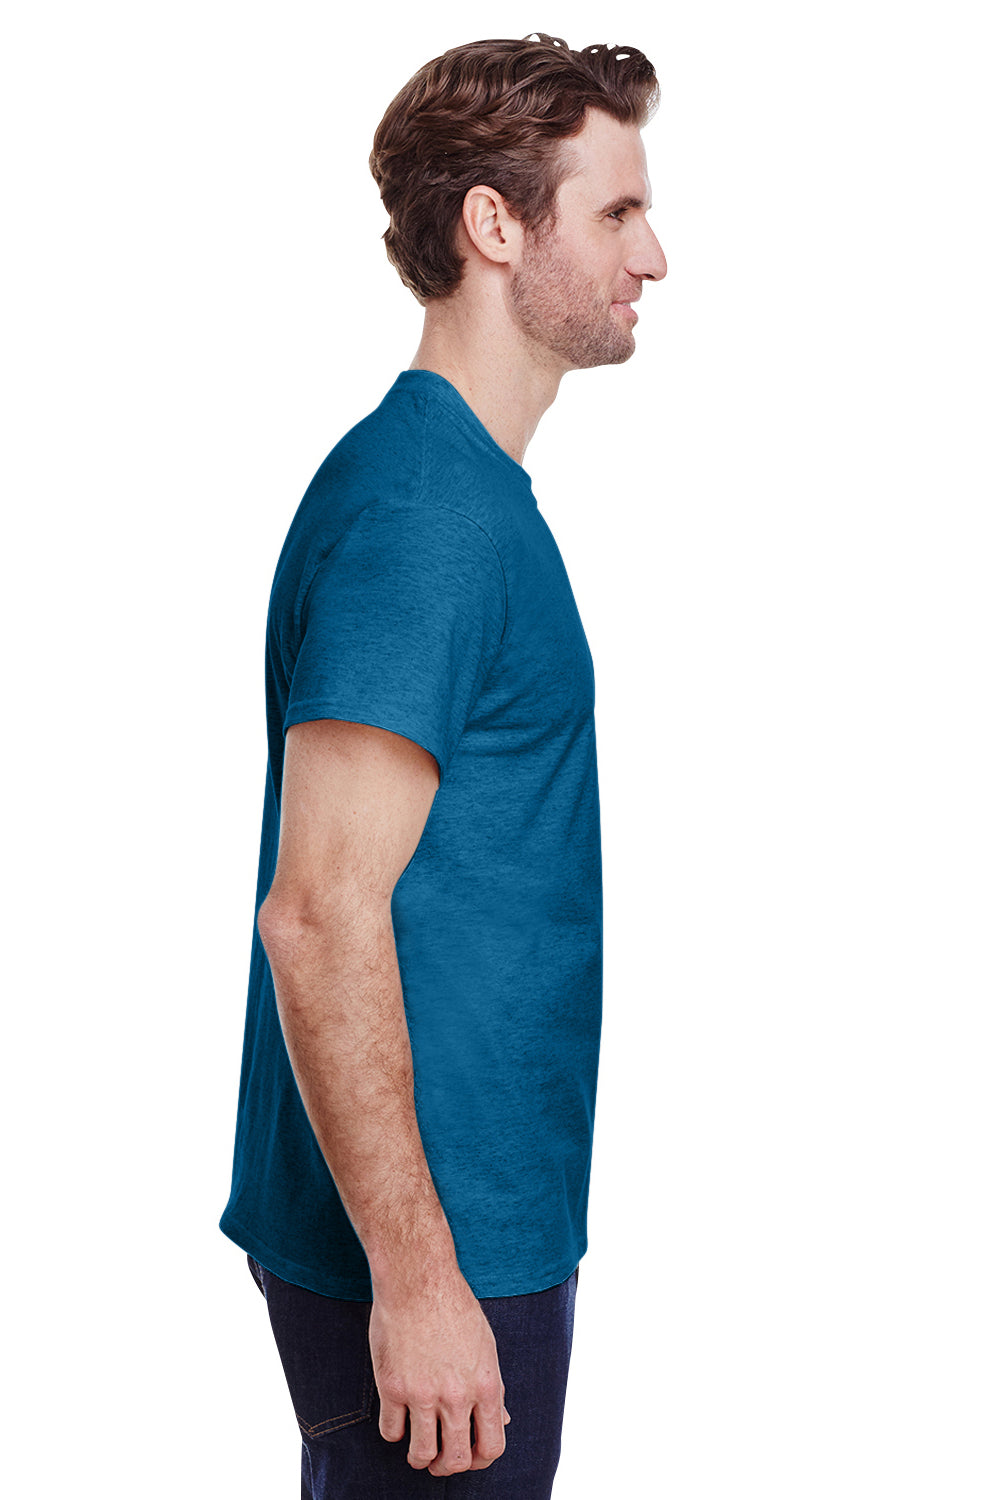 Gildan G500 Mens Short Sleeve Crewneck T-Shirt Antique Sapphire Blue Side